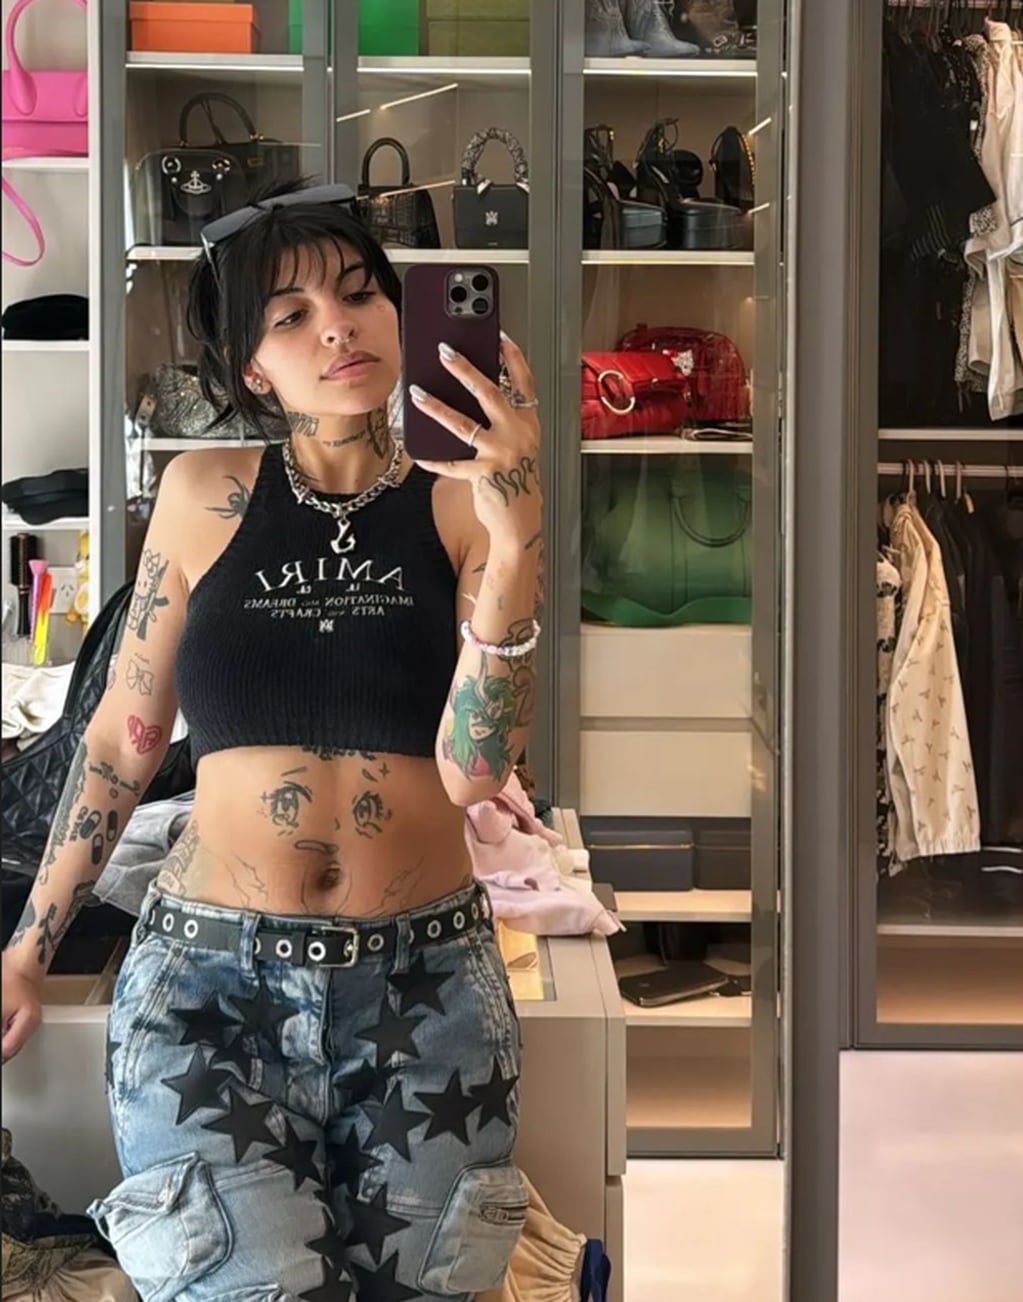 Cazzu deslumbró en Instagram con un outfit ultra sensual y dejó al descubierto sus tatuajes